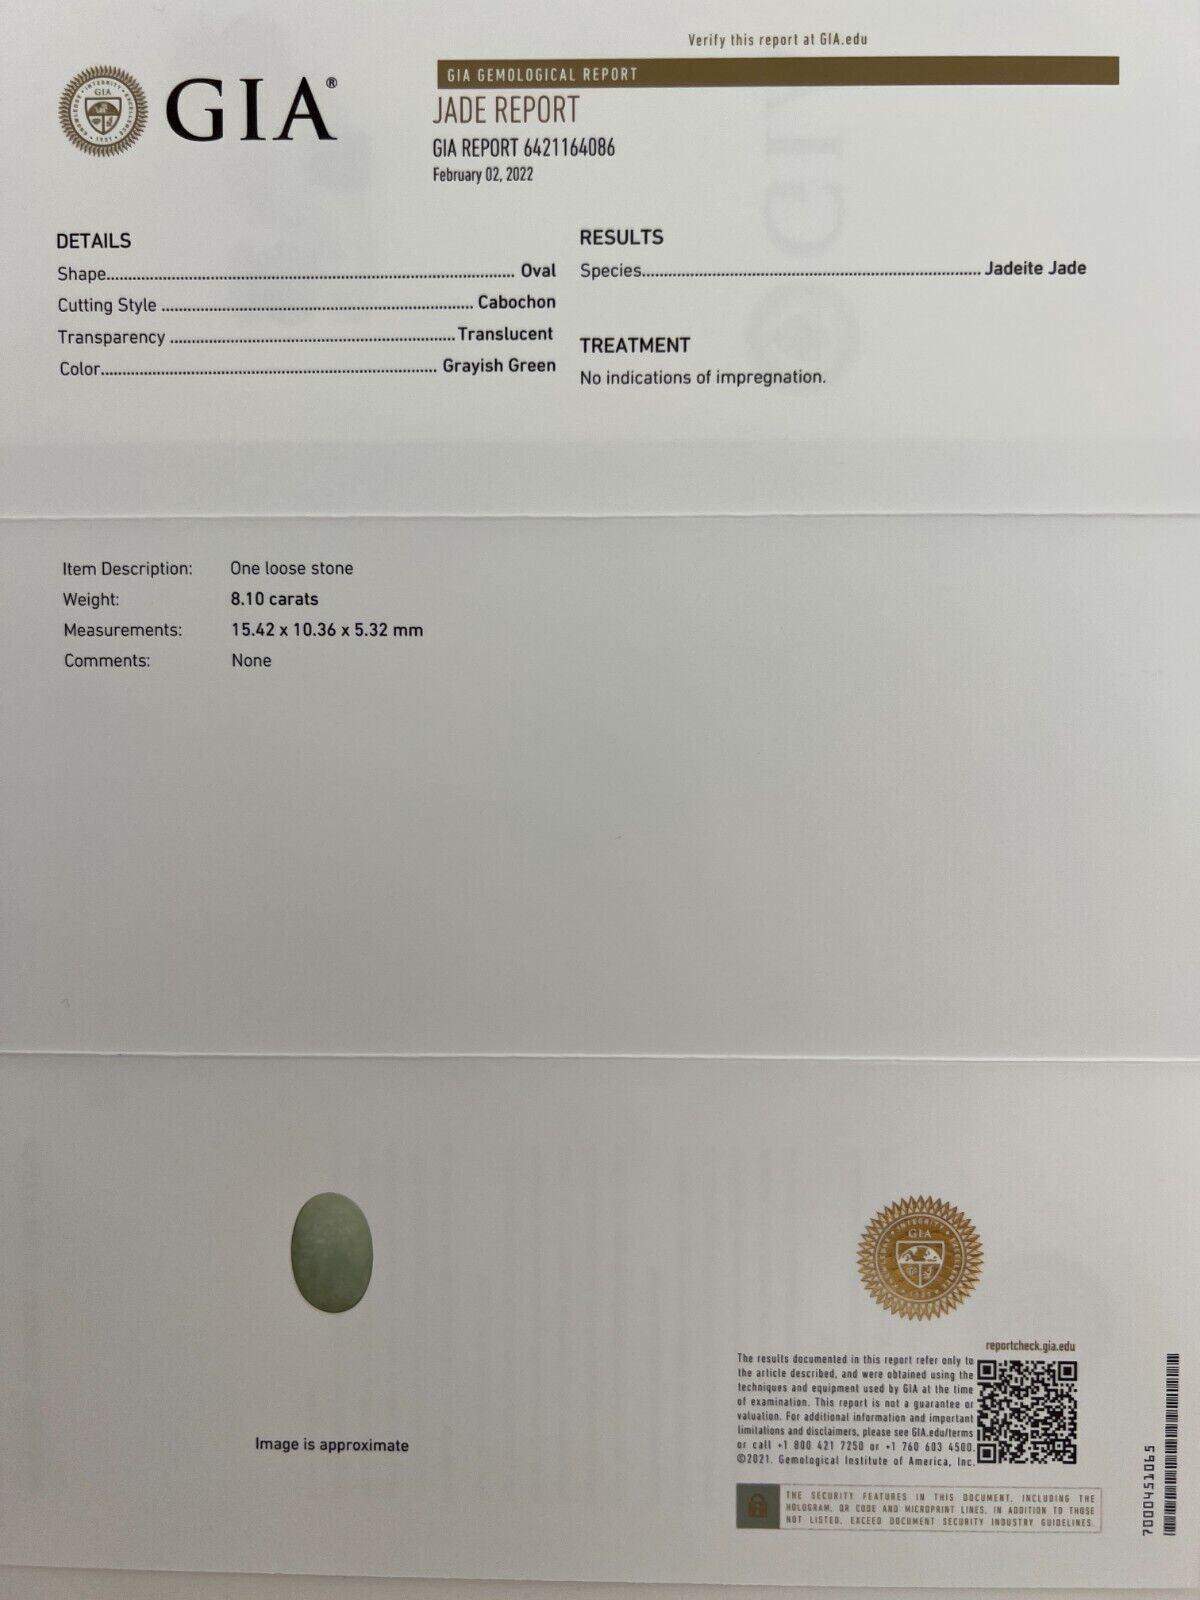 Cabochon ovale en jadéite verte grise de 8,10 carats, certifié par le GIA, de qualité 'A'.

Jadéite verte non traitée certifiée par le GIA.
8.10 Carat avec une excellente coupe ovale en cabochon. Entièrement certifié par le GIA. Jade jadéite